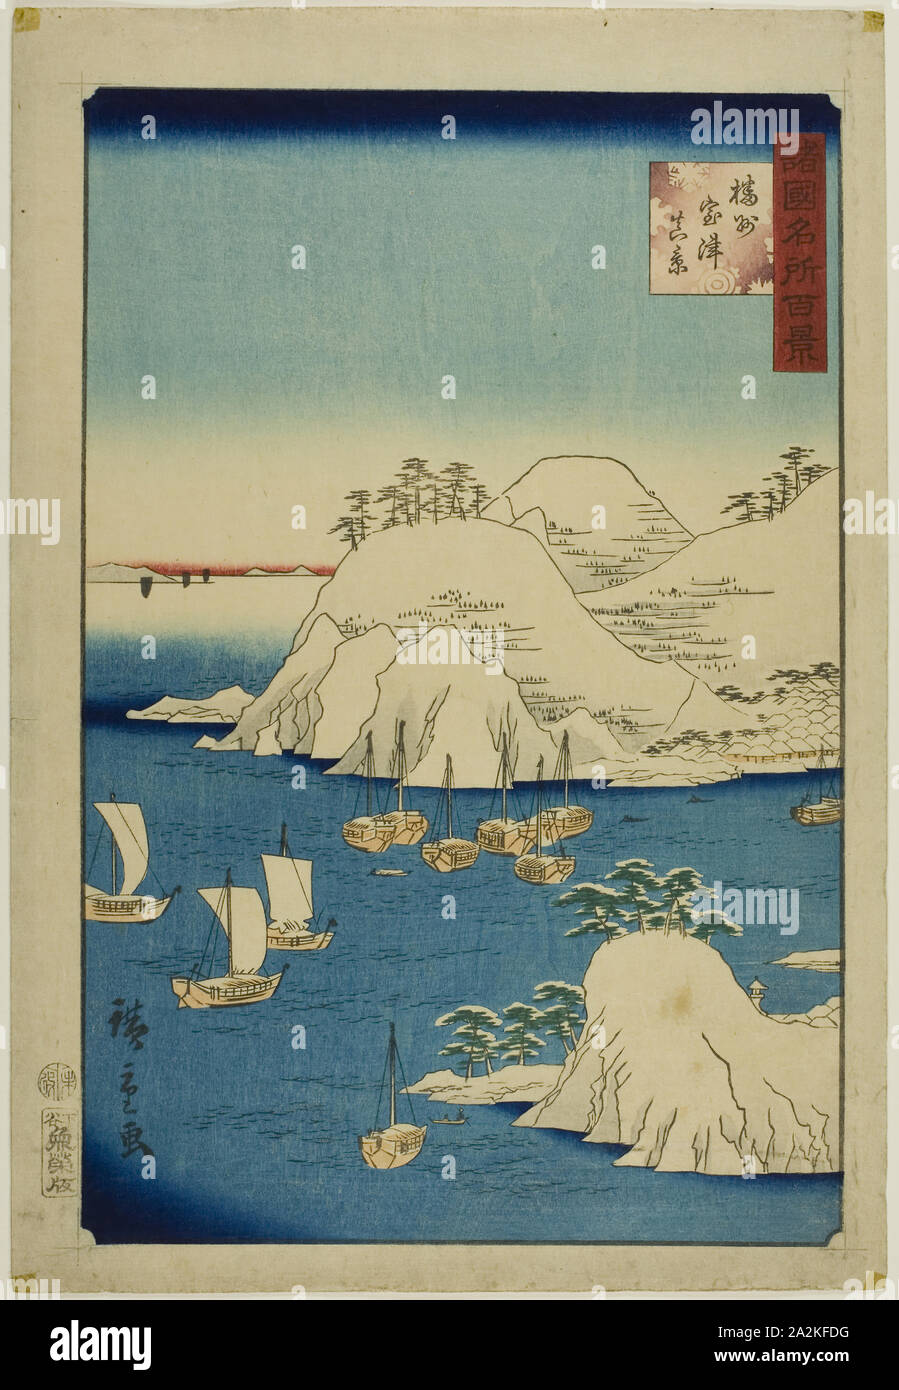 Aktuelle Ansicht von Muro Hafen, Banshu Provinz (Banshu Muro - tsu shinkei) aus der Serie 100 berühmten Ansichten in den verschiedenen Provinzen (Shokoku meisho hyakkei), 1859, Utagawa Hiroshige II (shigenobu), Japanisch, 1826 - 1869, Japan, Farbe holzschnitt Stockfoto